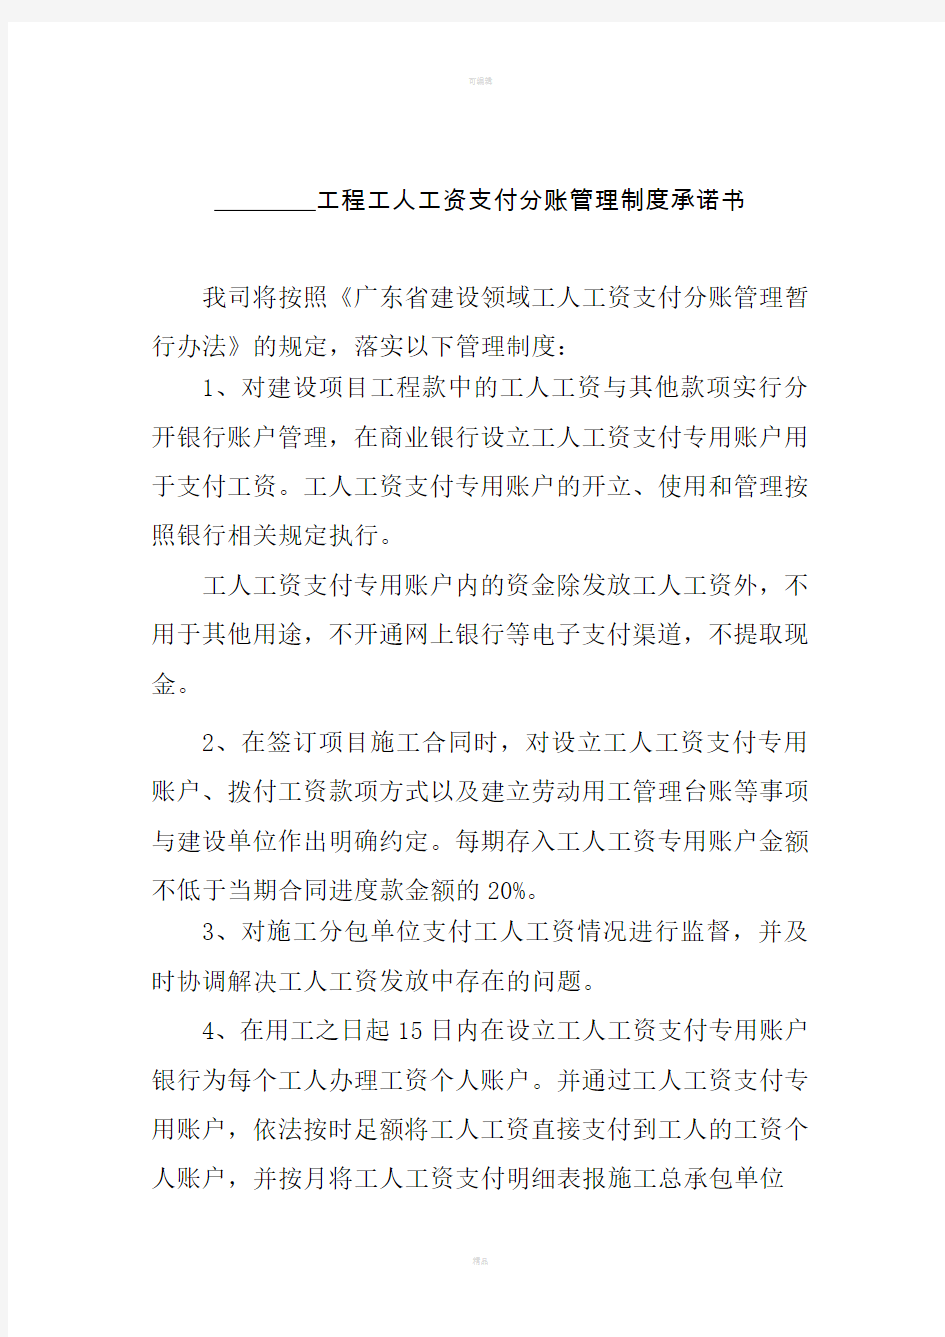 广东省建设领域工人工资支付分账管理制度承诺书